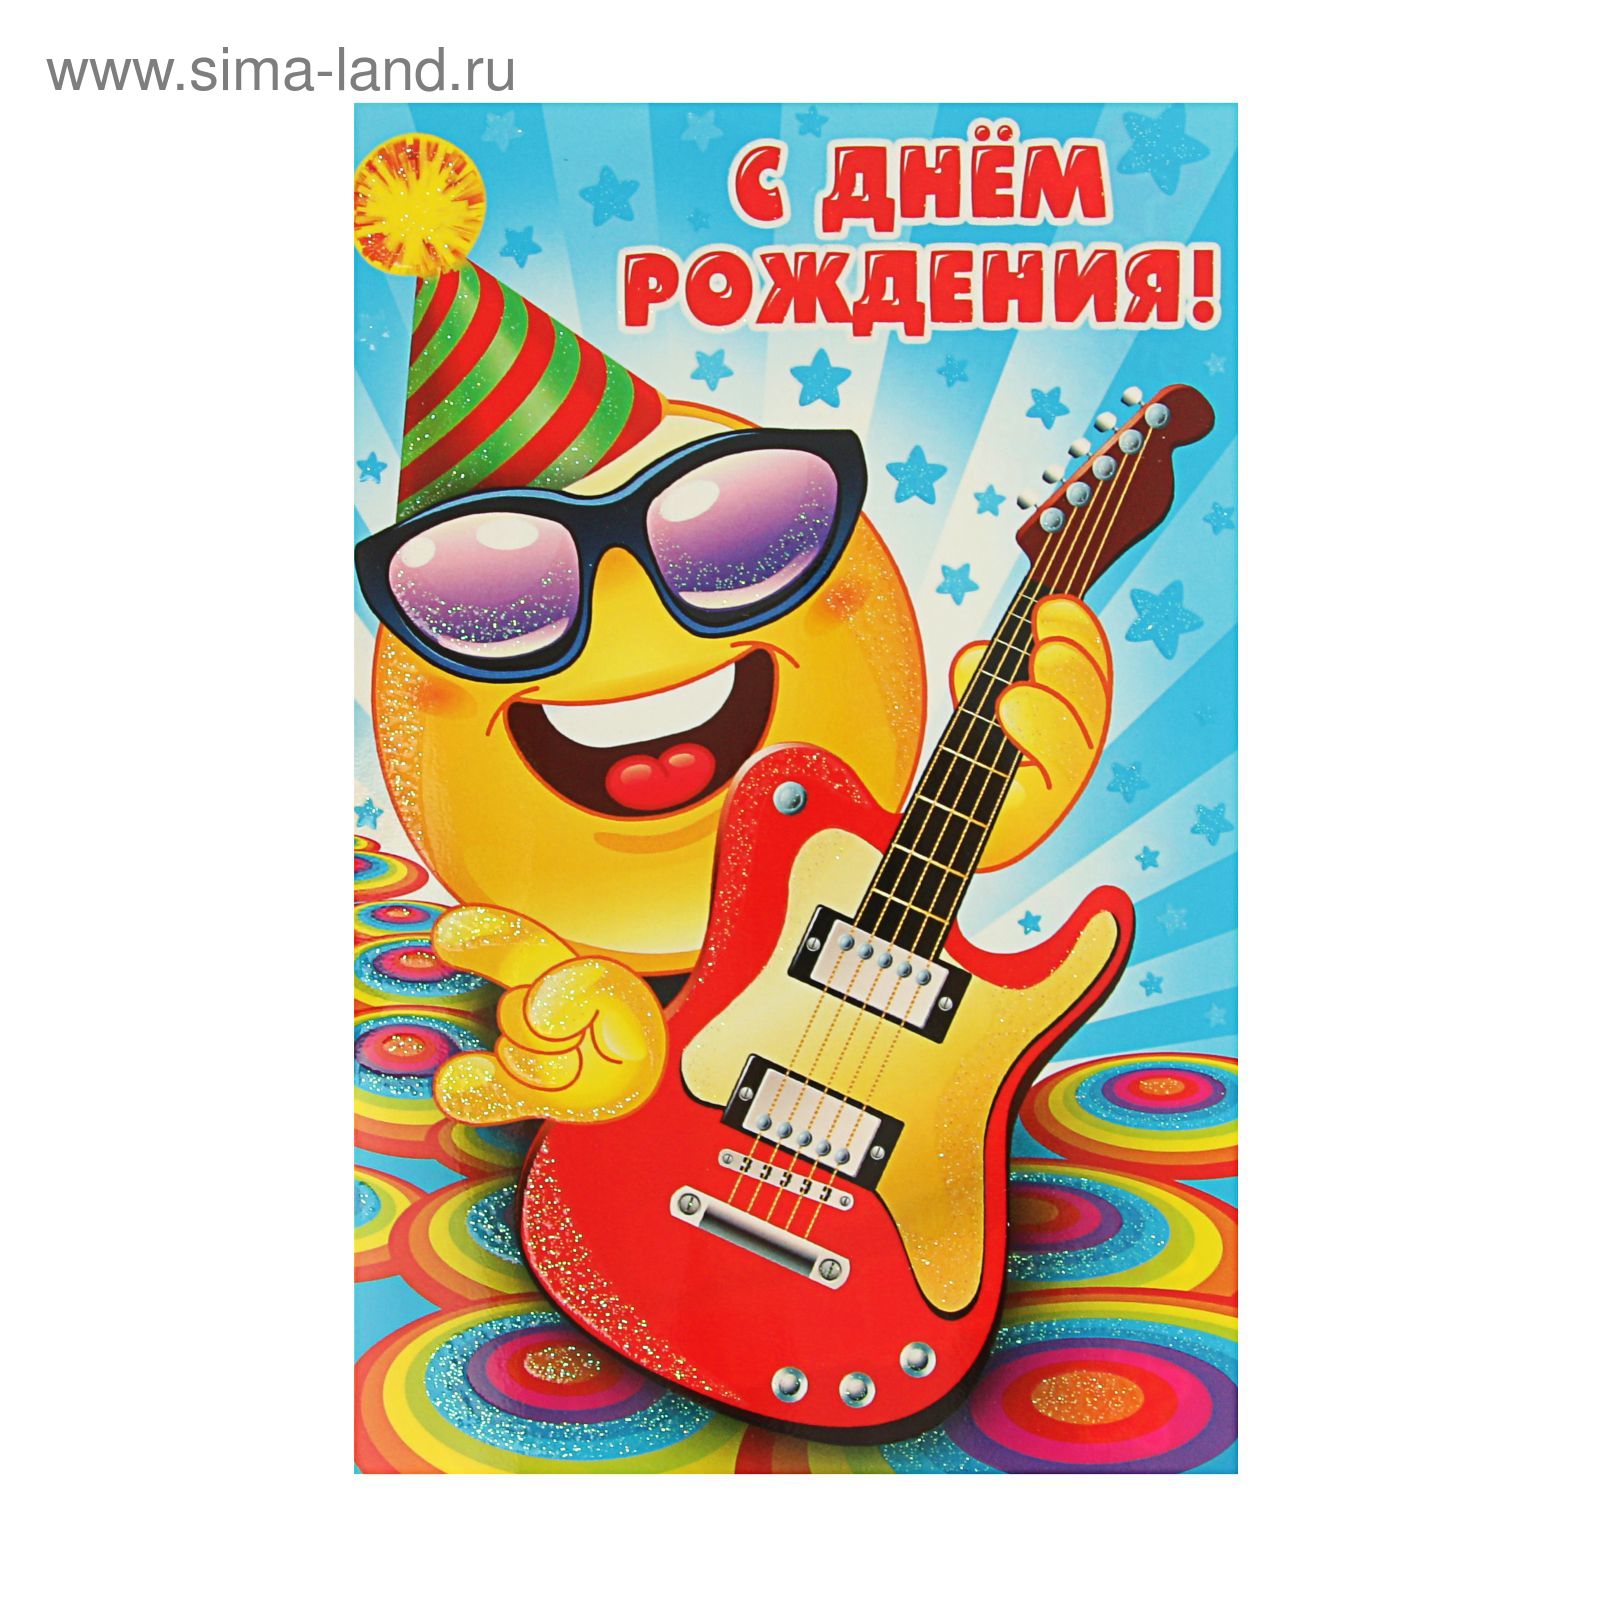 Гитара. Набор открытка-конверт для вышивки микробисером. Абрис Арт (AOM-014)